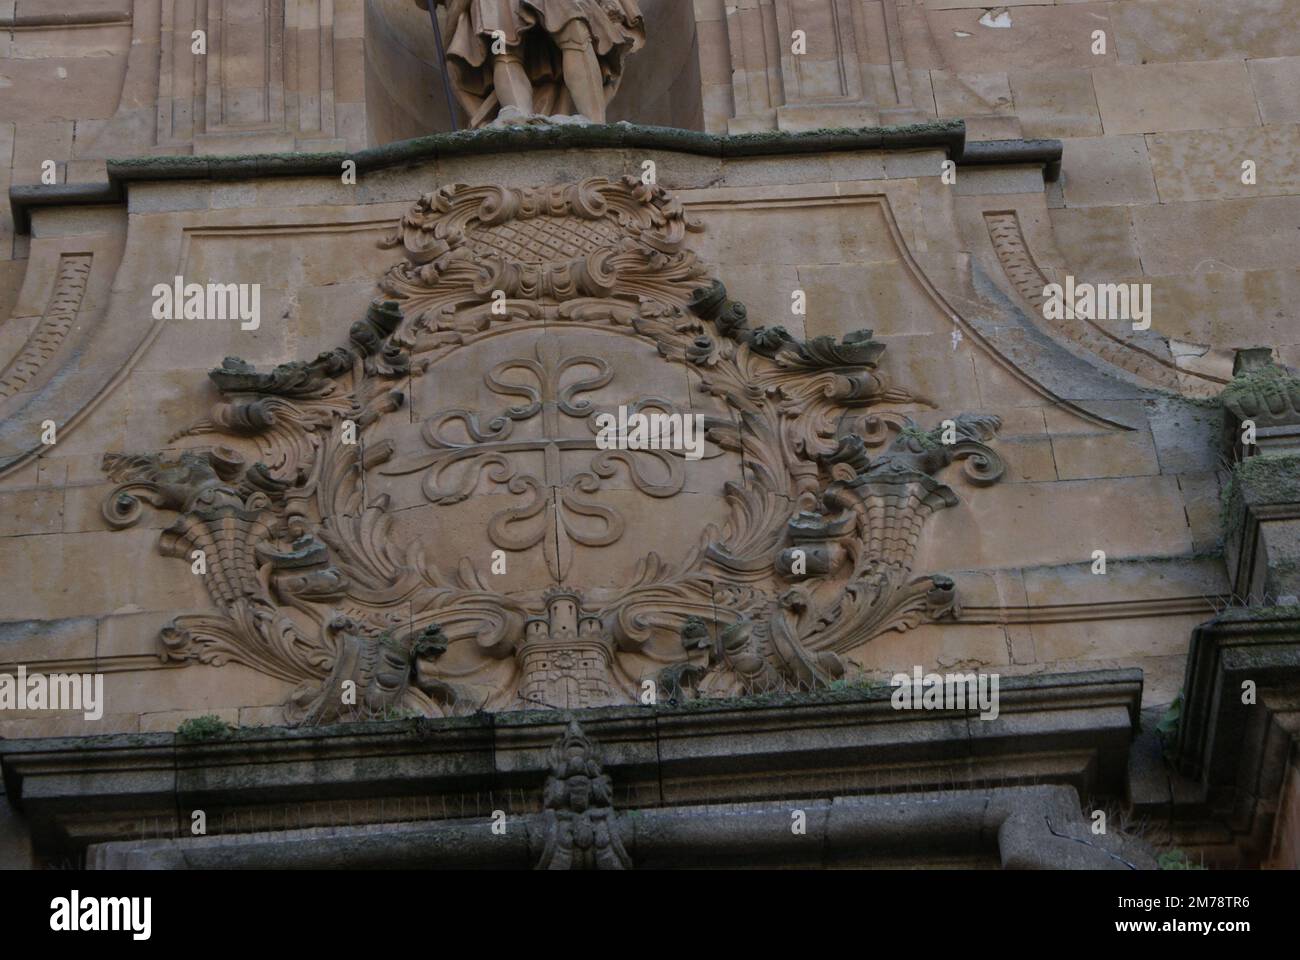 ARCHITECTURE DE SALAMANQUE. Salamanca en espagnol, est une ville de la provincia de Salamanque dans la communauté autonome de Castille-et-le Foto Stock